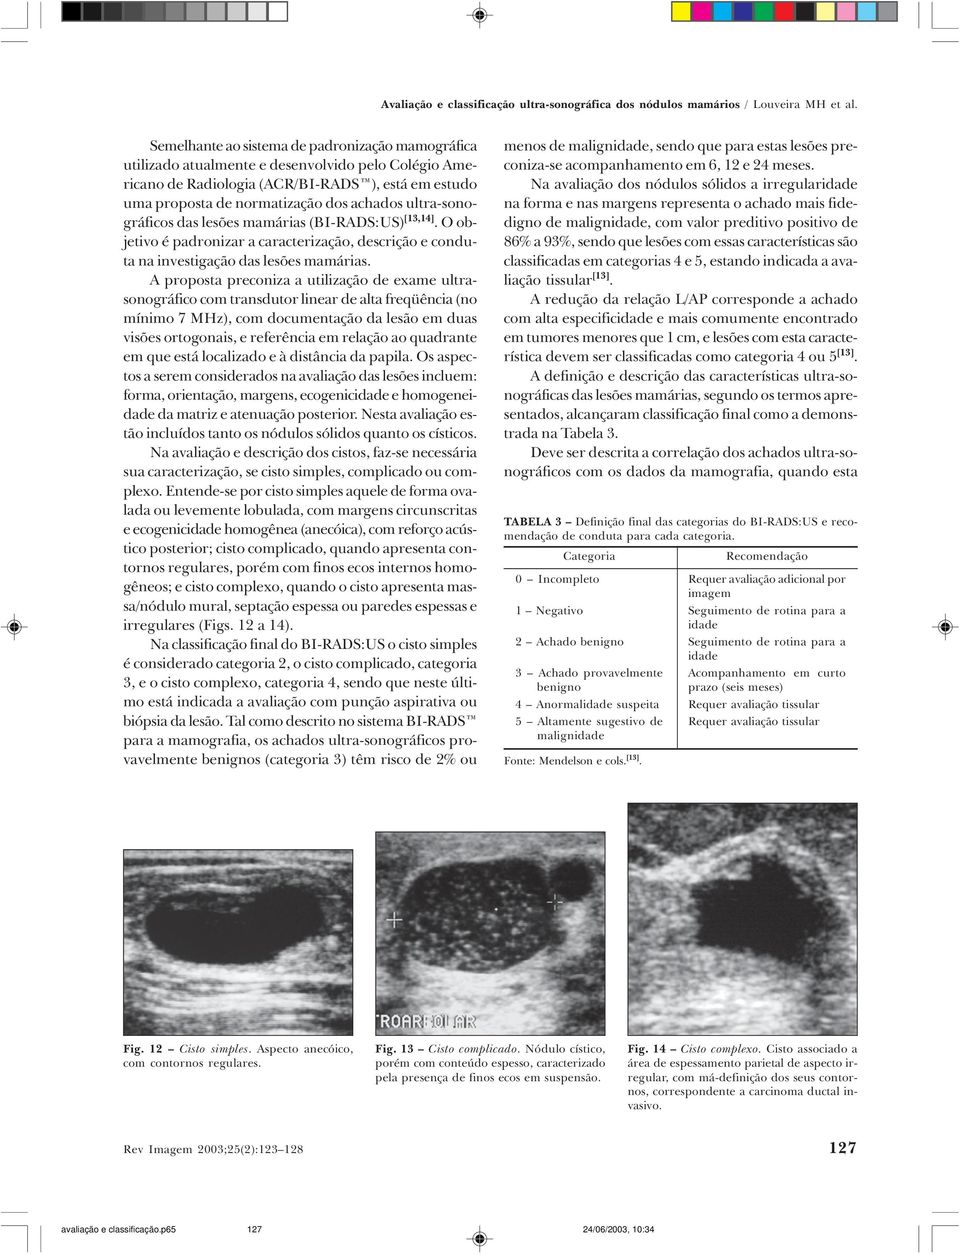 ultra-sonográficos das lesões mamárias (BI-RADS:US) [13,14]. O objetivo é padronizar a caracterização, descrição e conduta na investigação das lesões mamárias.